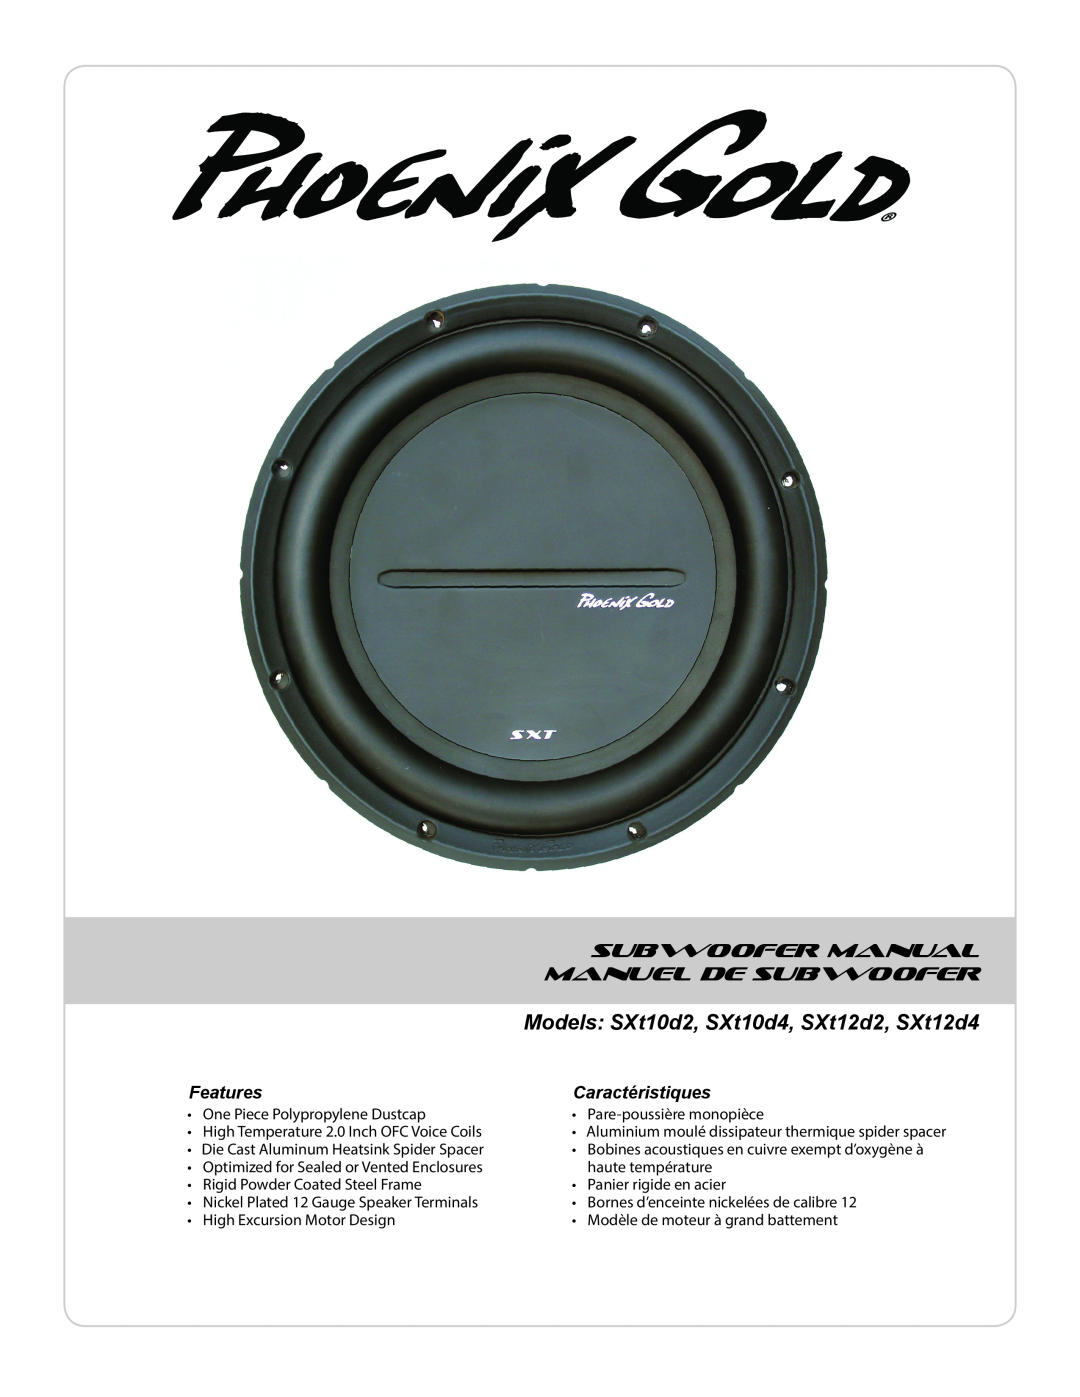 Phoenix Gold SXT10D4, SXT12D4, SXT12D2, SXT10D2 manual Subwoofer Manual, Manuel De Subwoofer, Features, Caractéristiques 